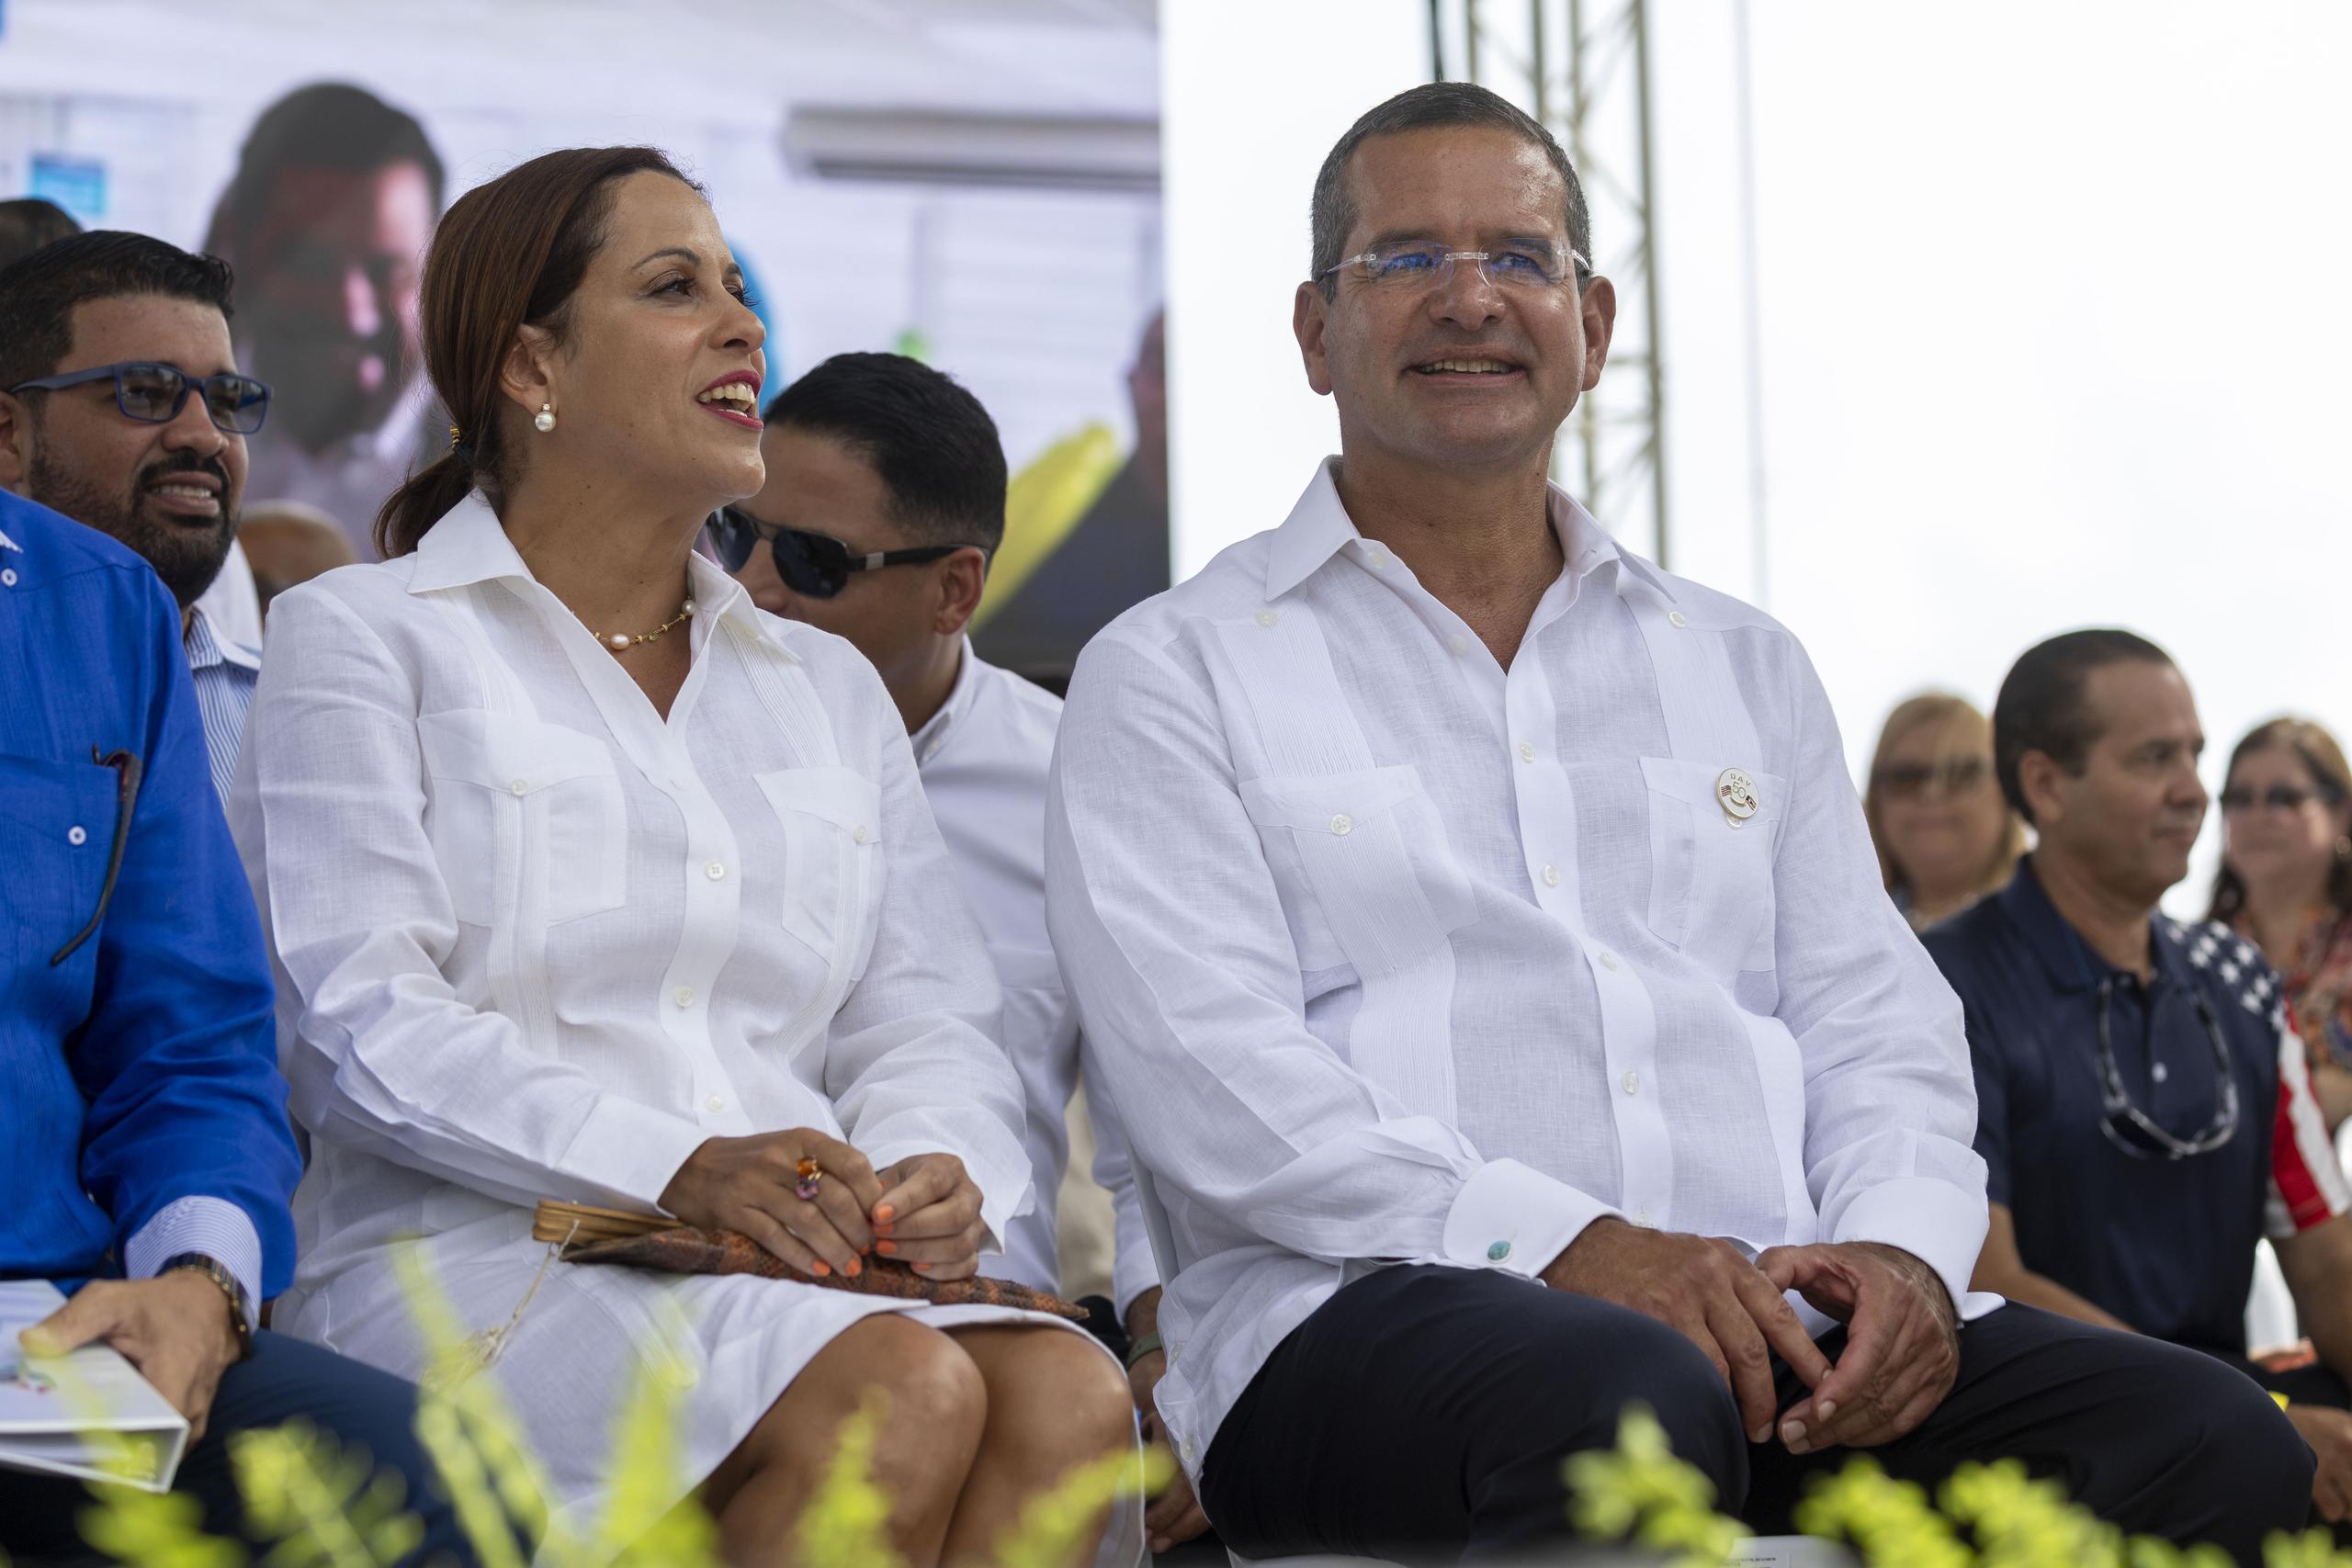 La abogada Fabiola Ansótegui Blanc y el gobernador Pedro Pierluisi iniciaron su relación en el 2020.
.